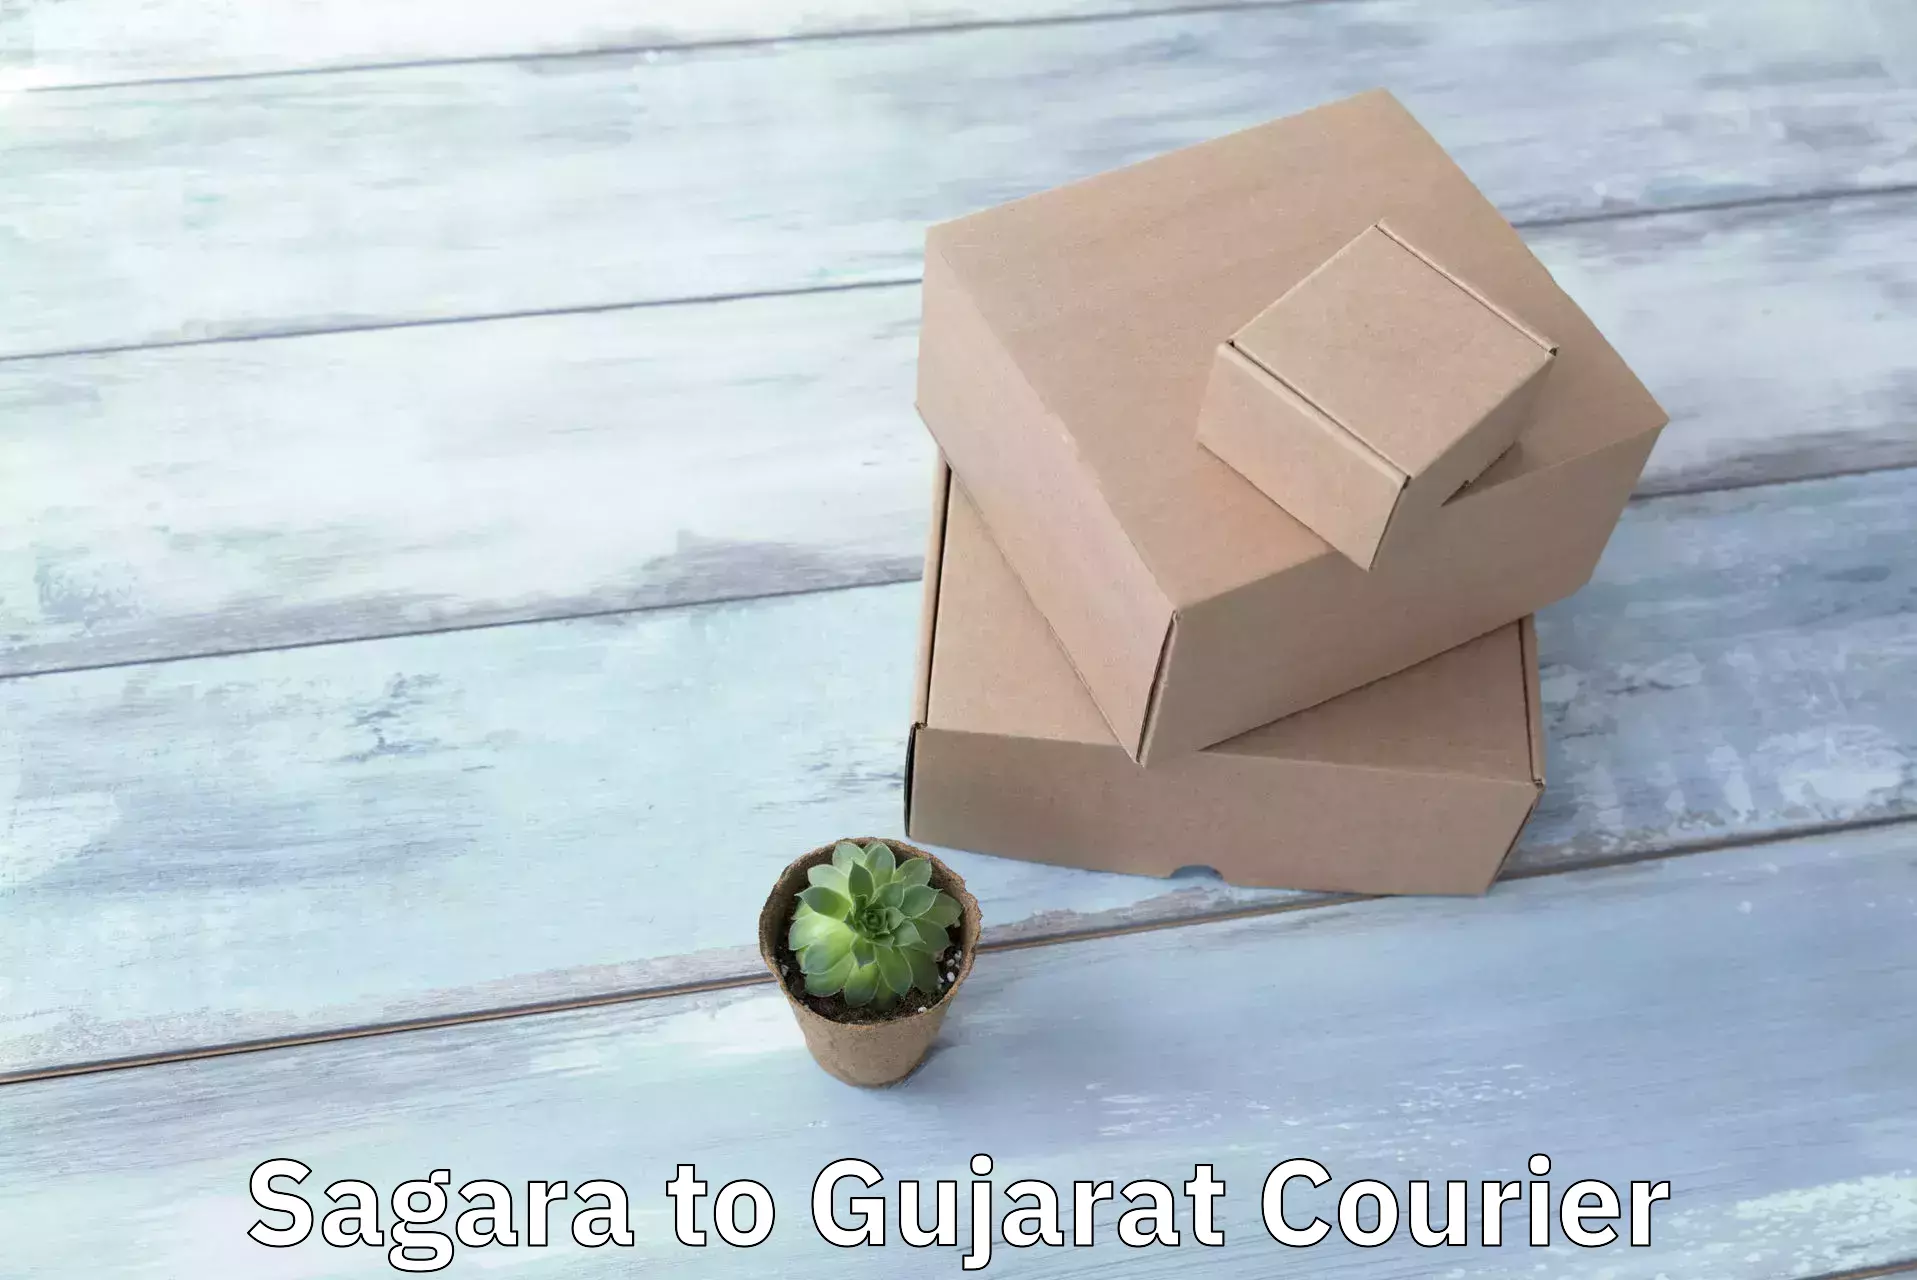 Fast delivery service Sagara to Gujarat